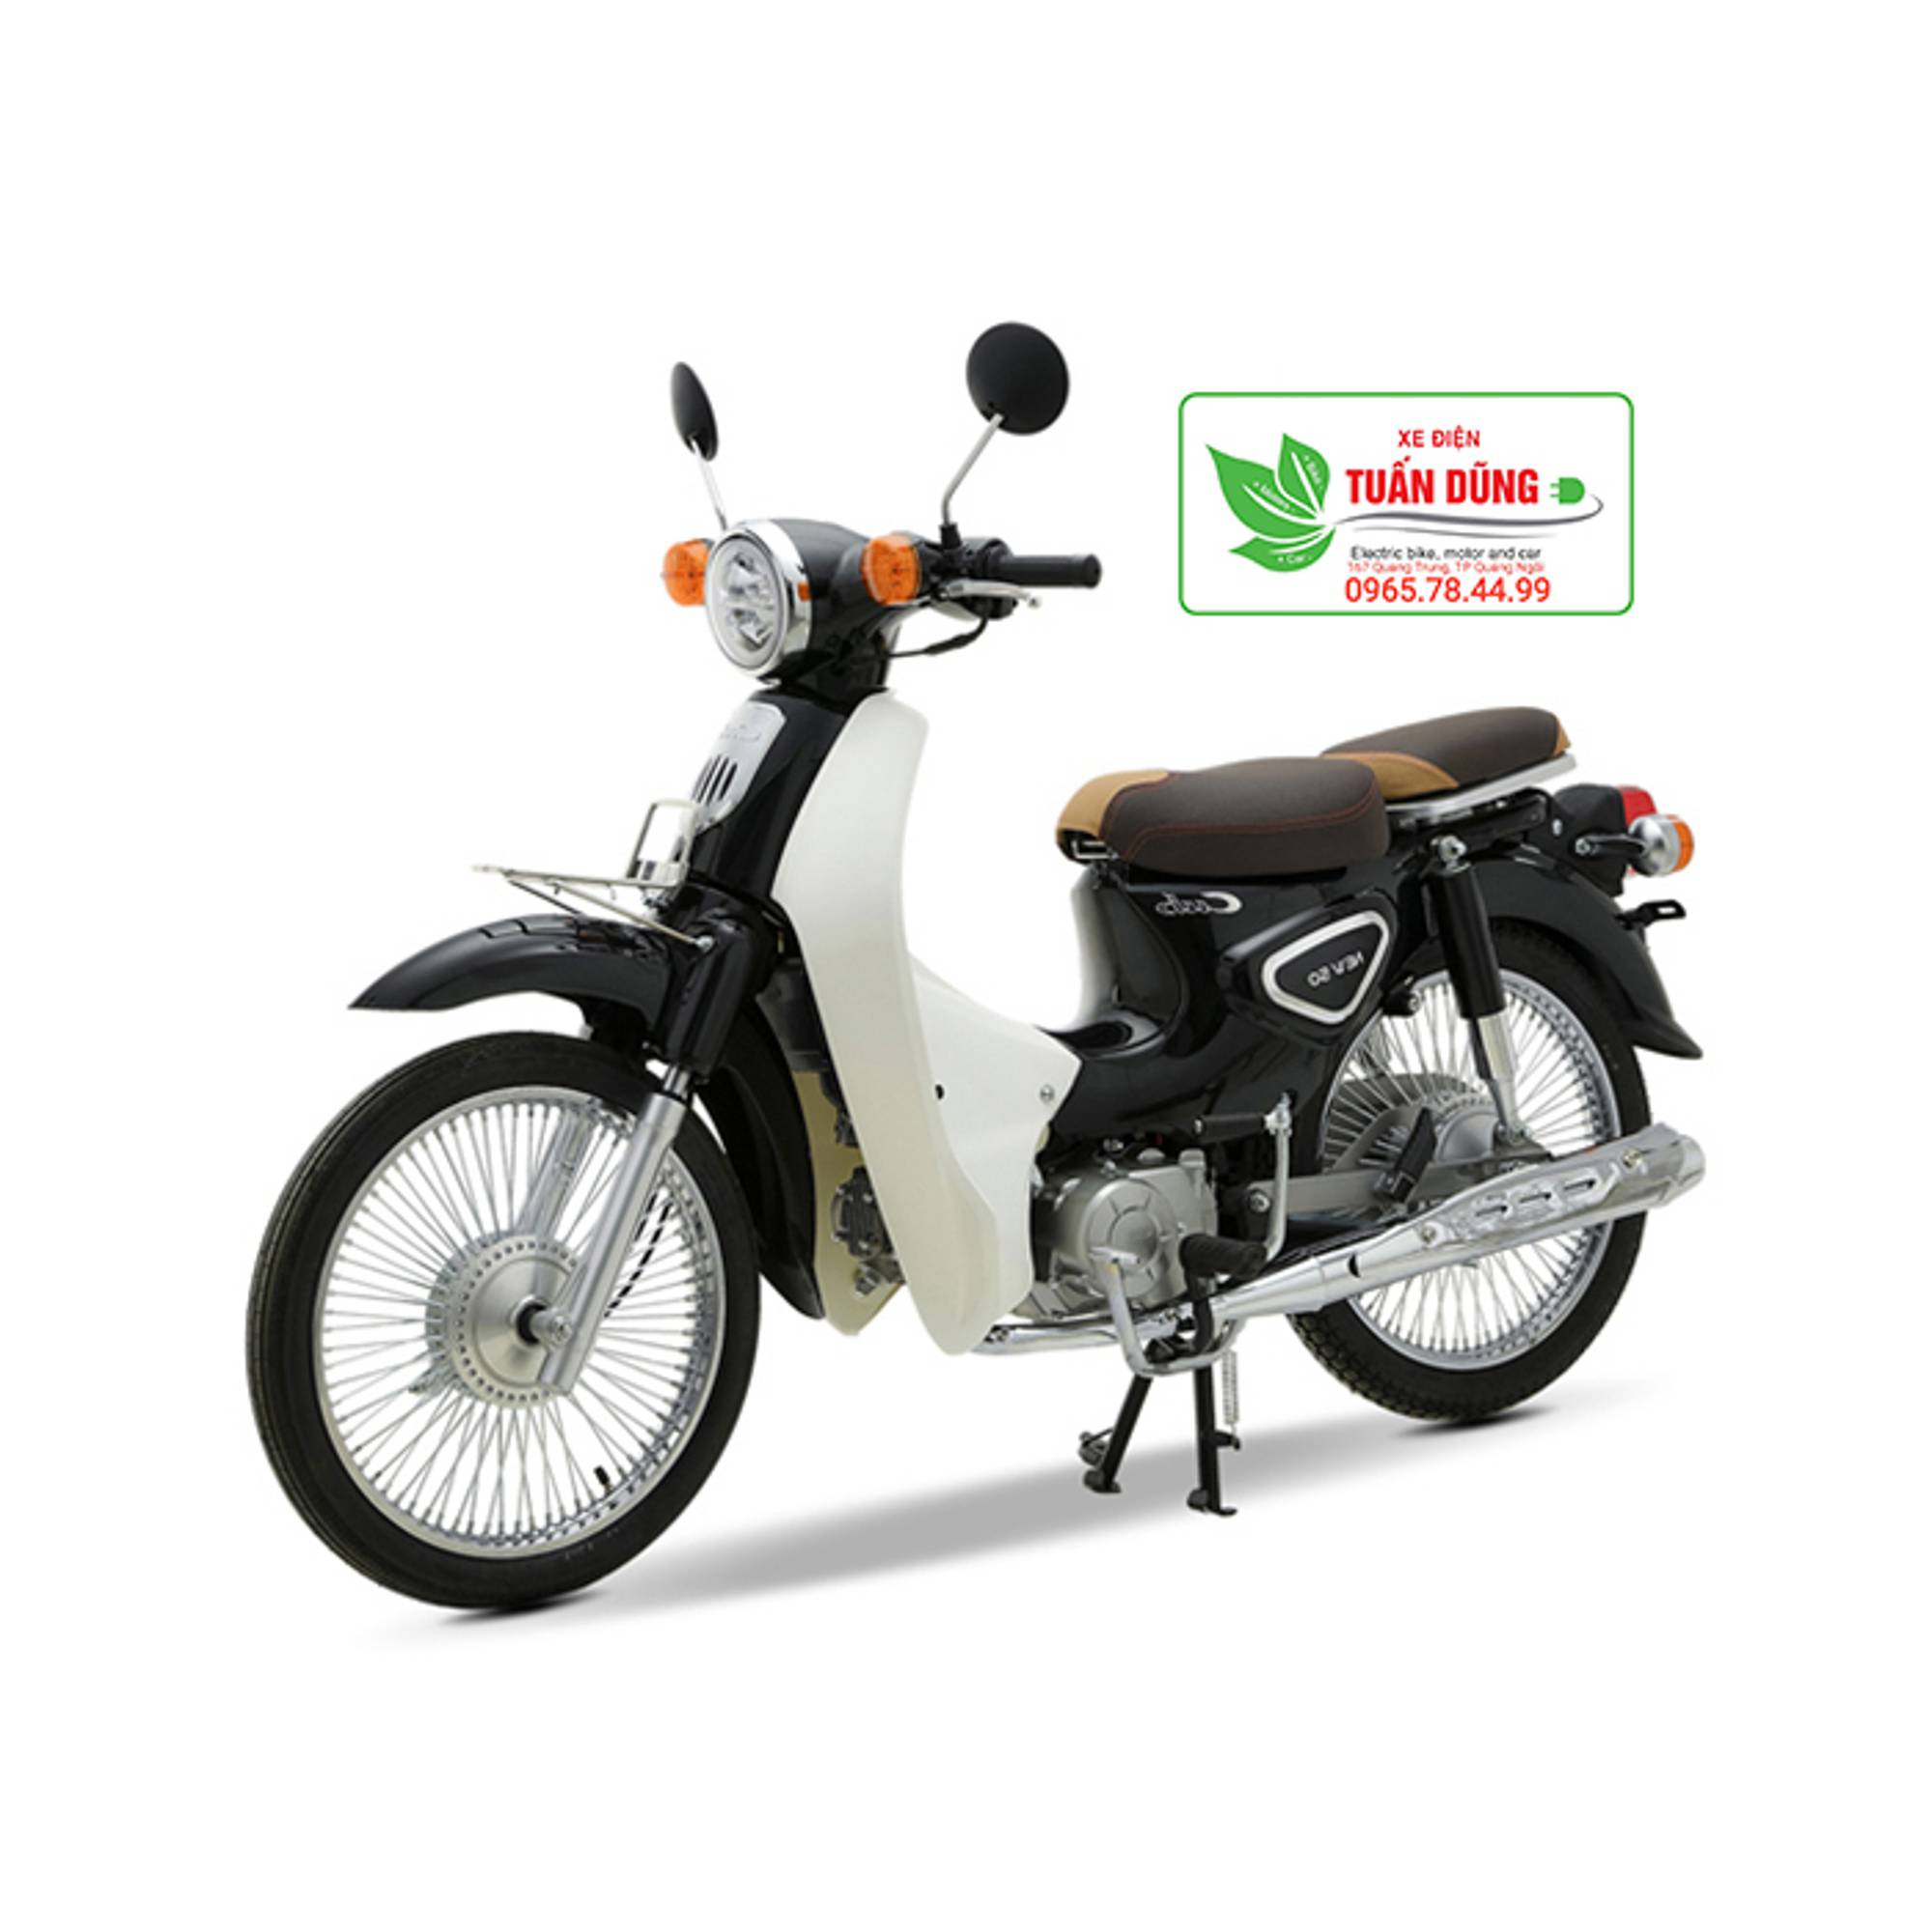 Xe máy Little Cub 50 trẻ trung nhập khẩu chính hãng giá 12 triệu đồng   2banhvn